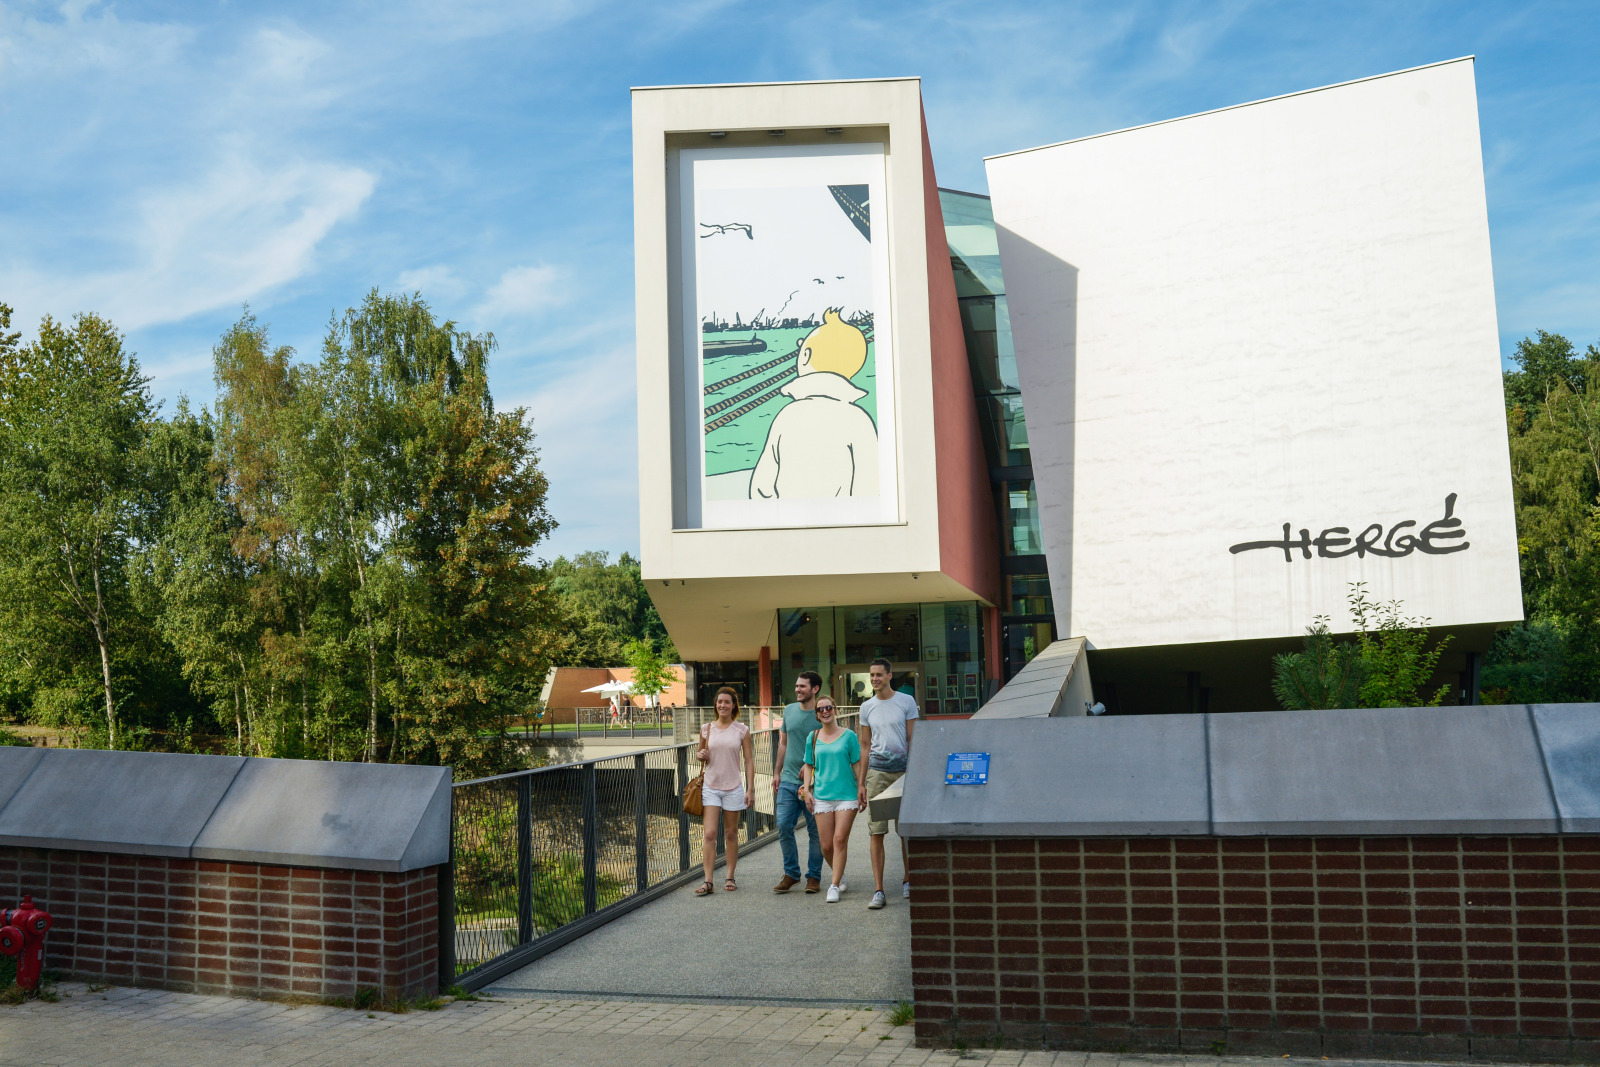 Buitenaanzicht van het gebouw van het Hergé Museum met vier bezoekers die naar buiten komen